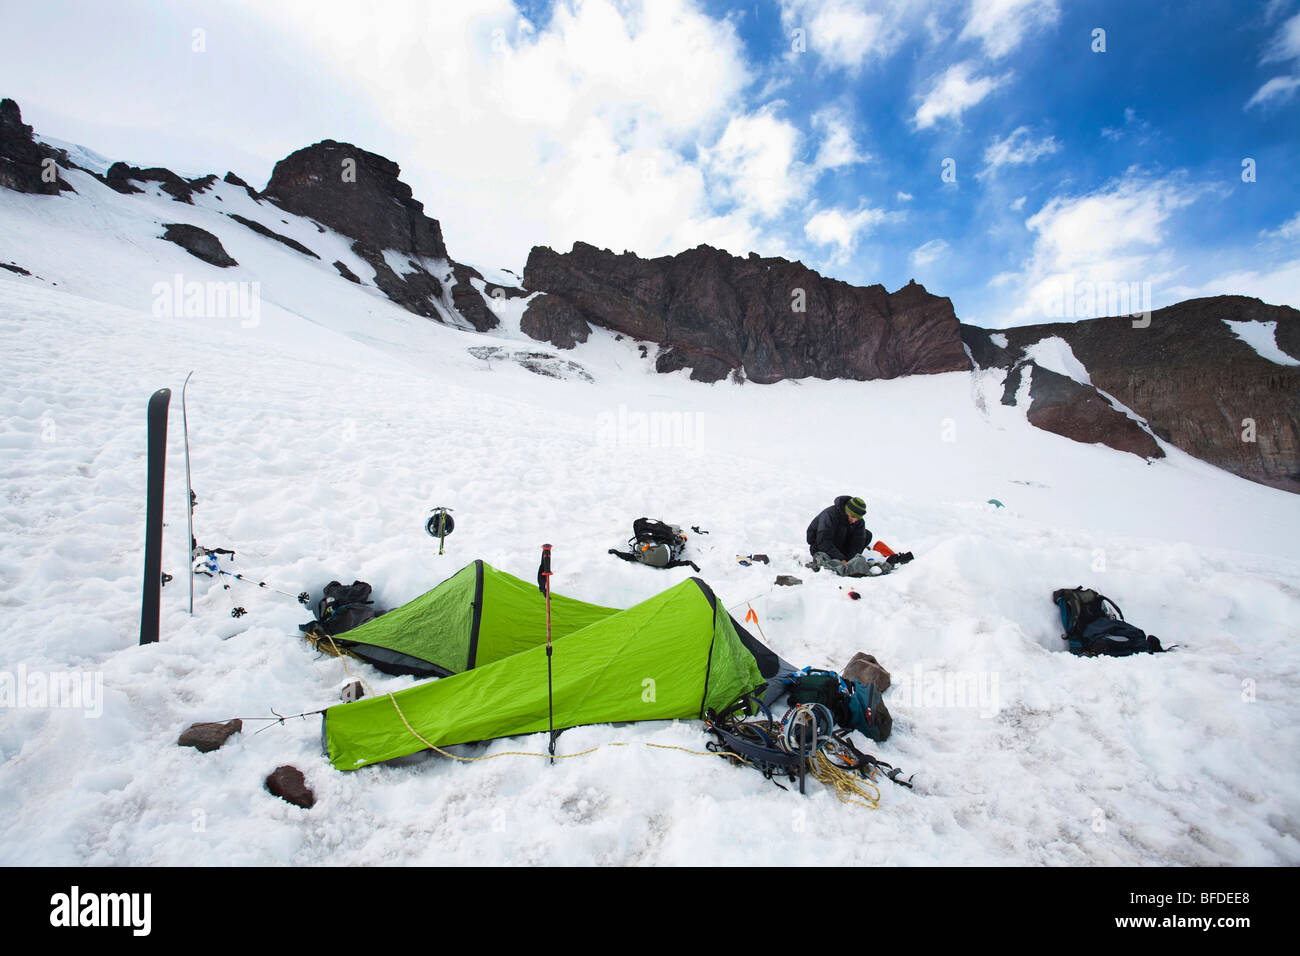 Deux sacs de bivouac et skis indiquent un camping au milieu de névé.eld. Banque D'Images